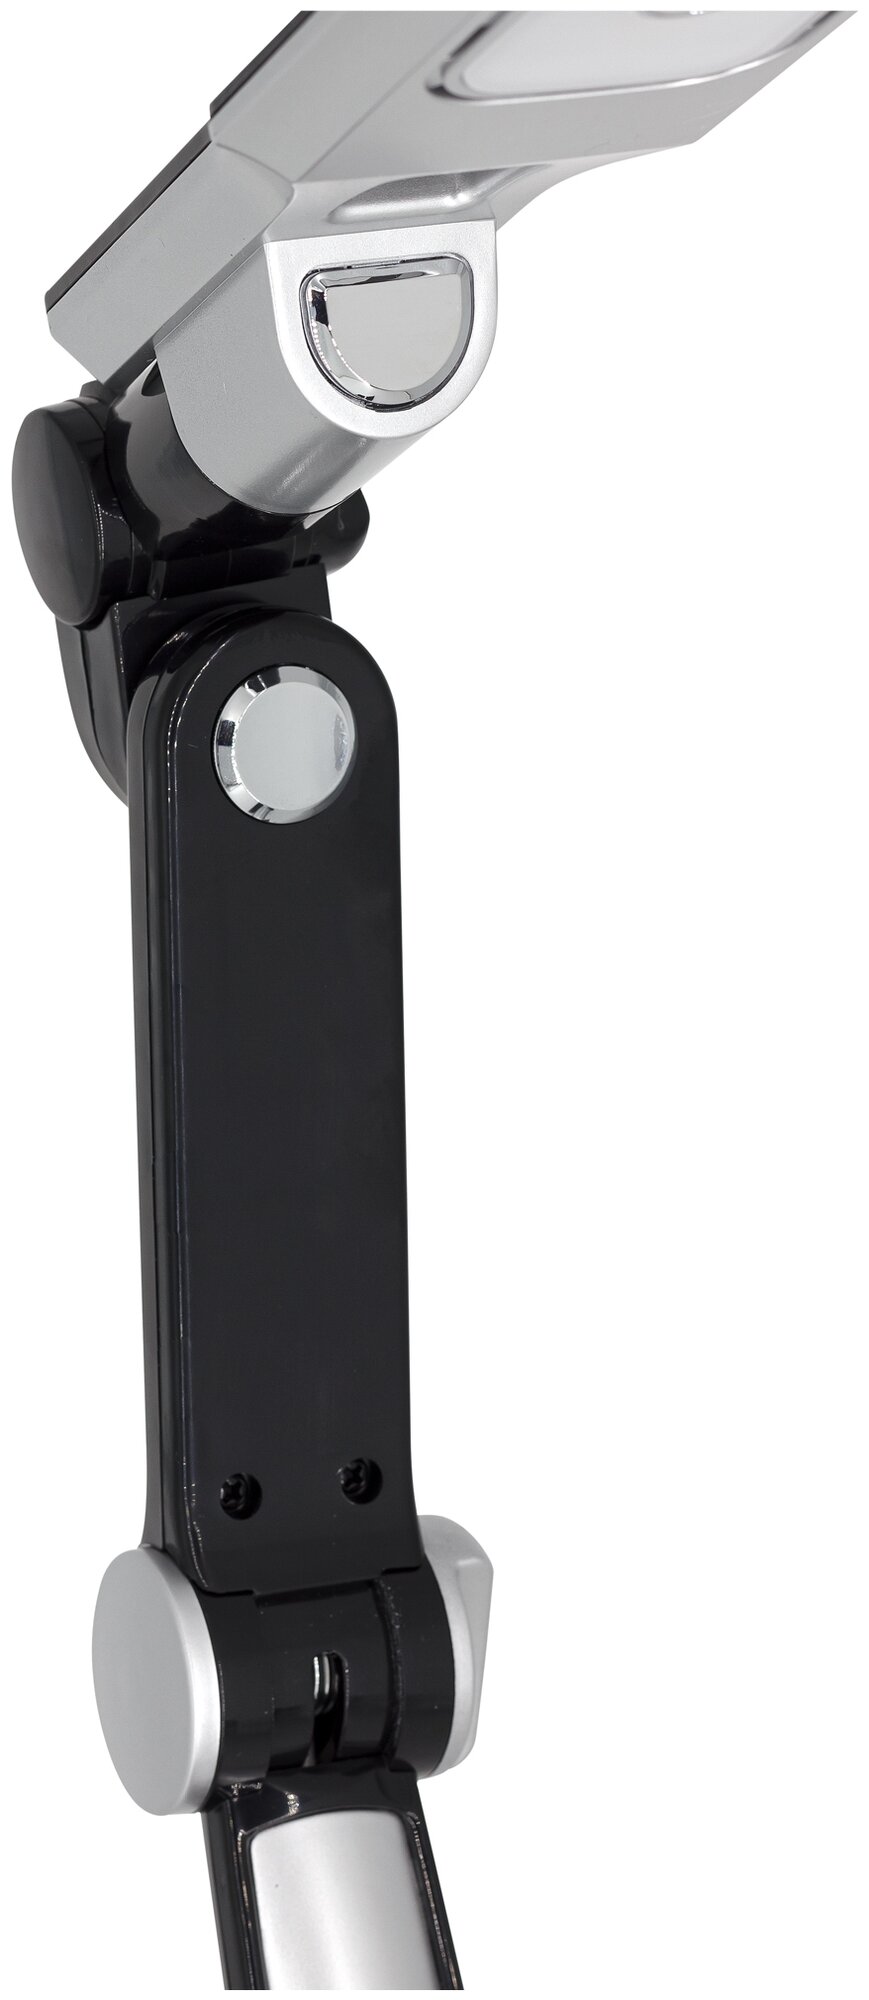 Настольный светодиодный светильник ARTSTYLE TL-402B черный, 10 Вт, с регулируемой яркостью и цветом свечения, струбцина в комплекте